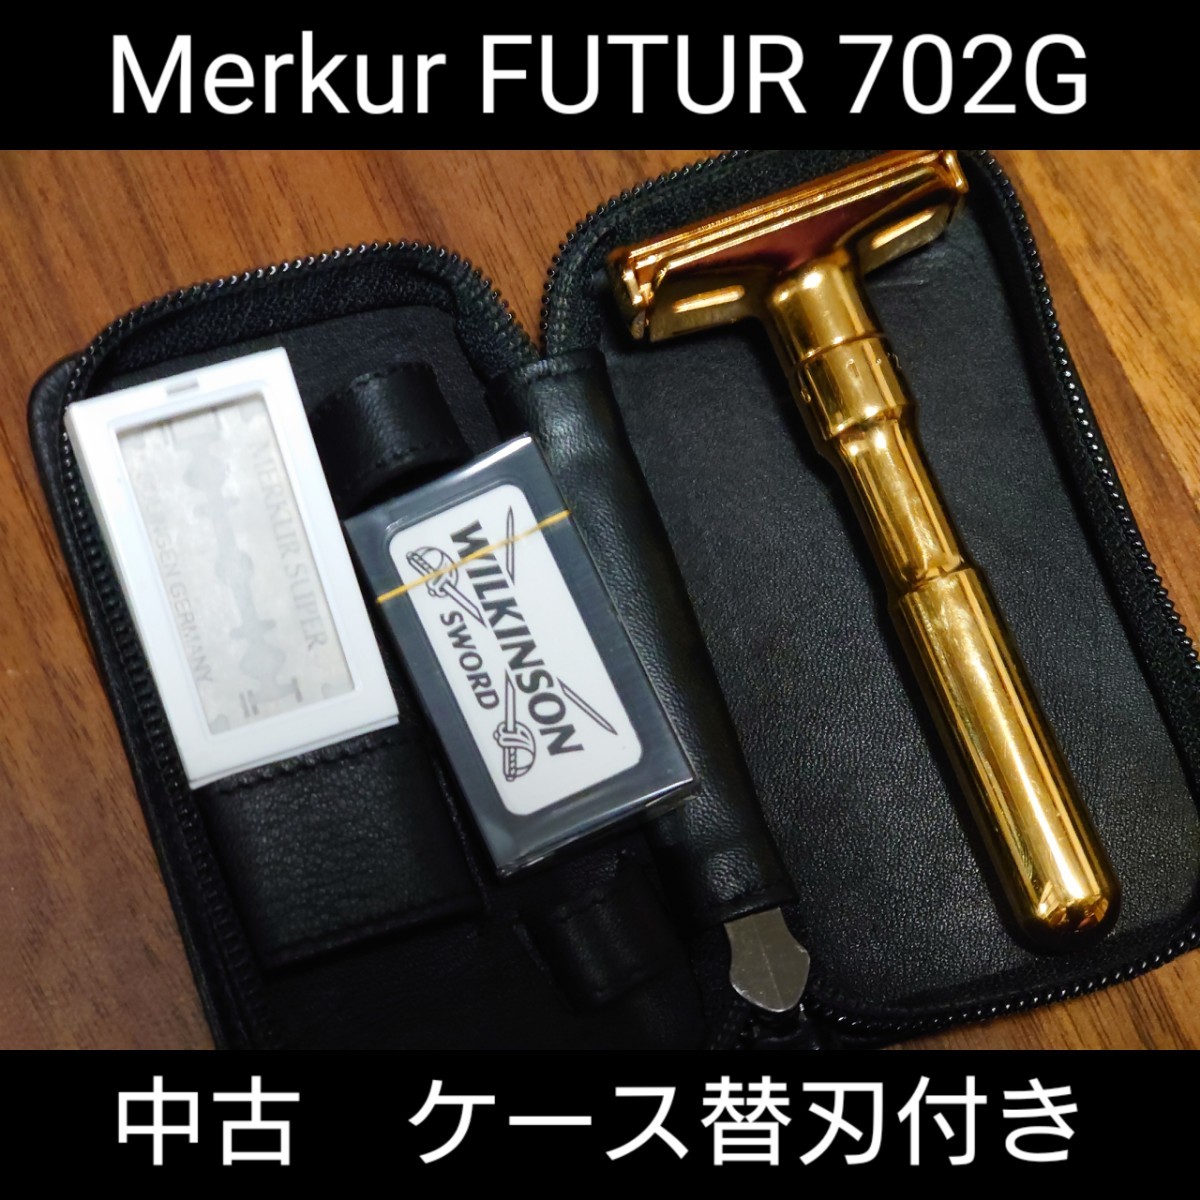 中古】メルクール Futur 702G ゴールド 金 両刃カミソリ Merkur